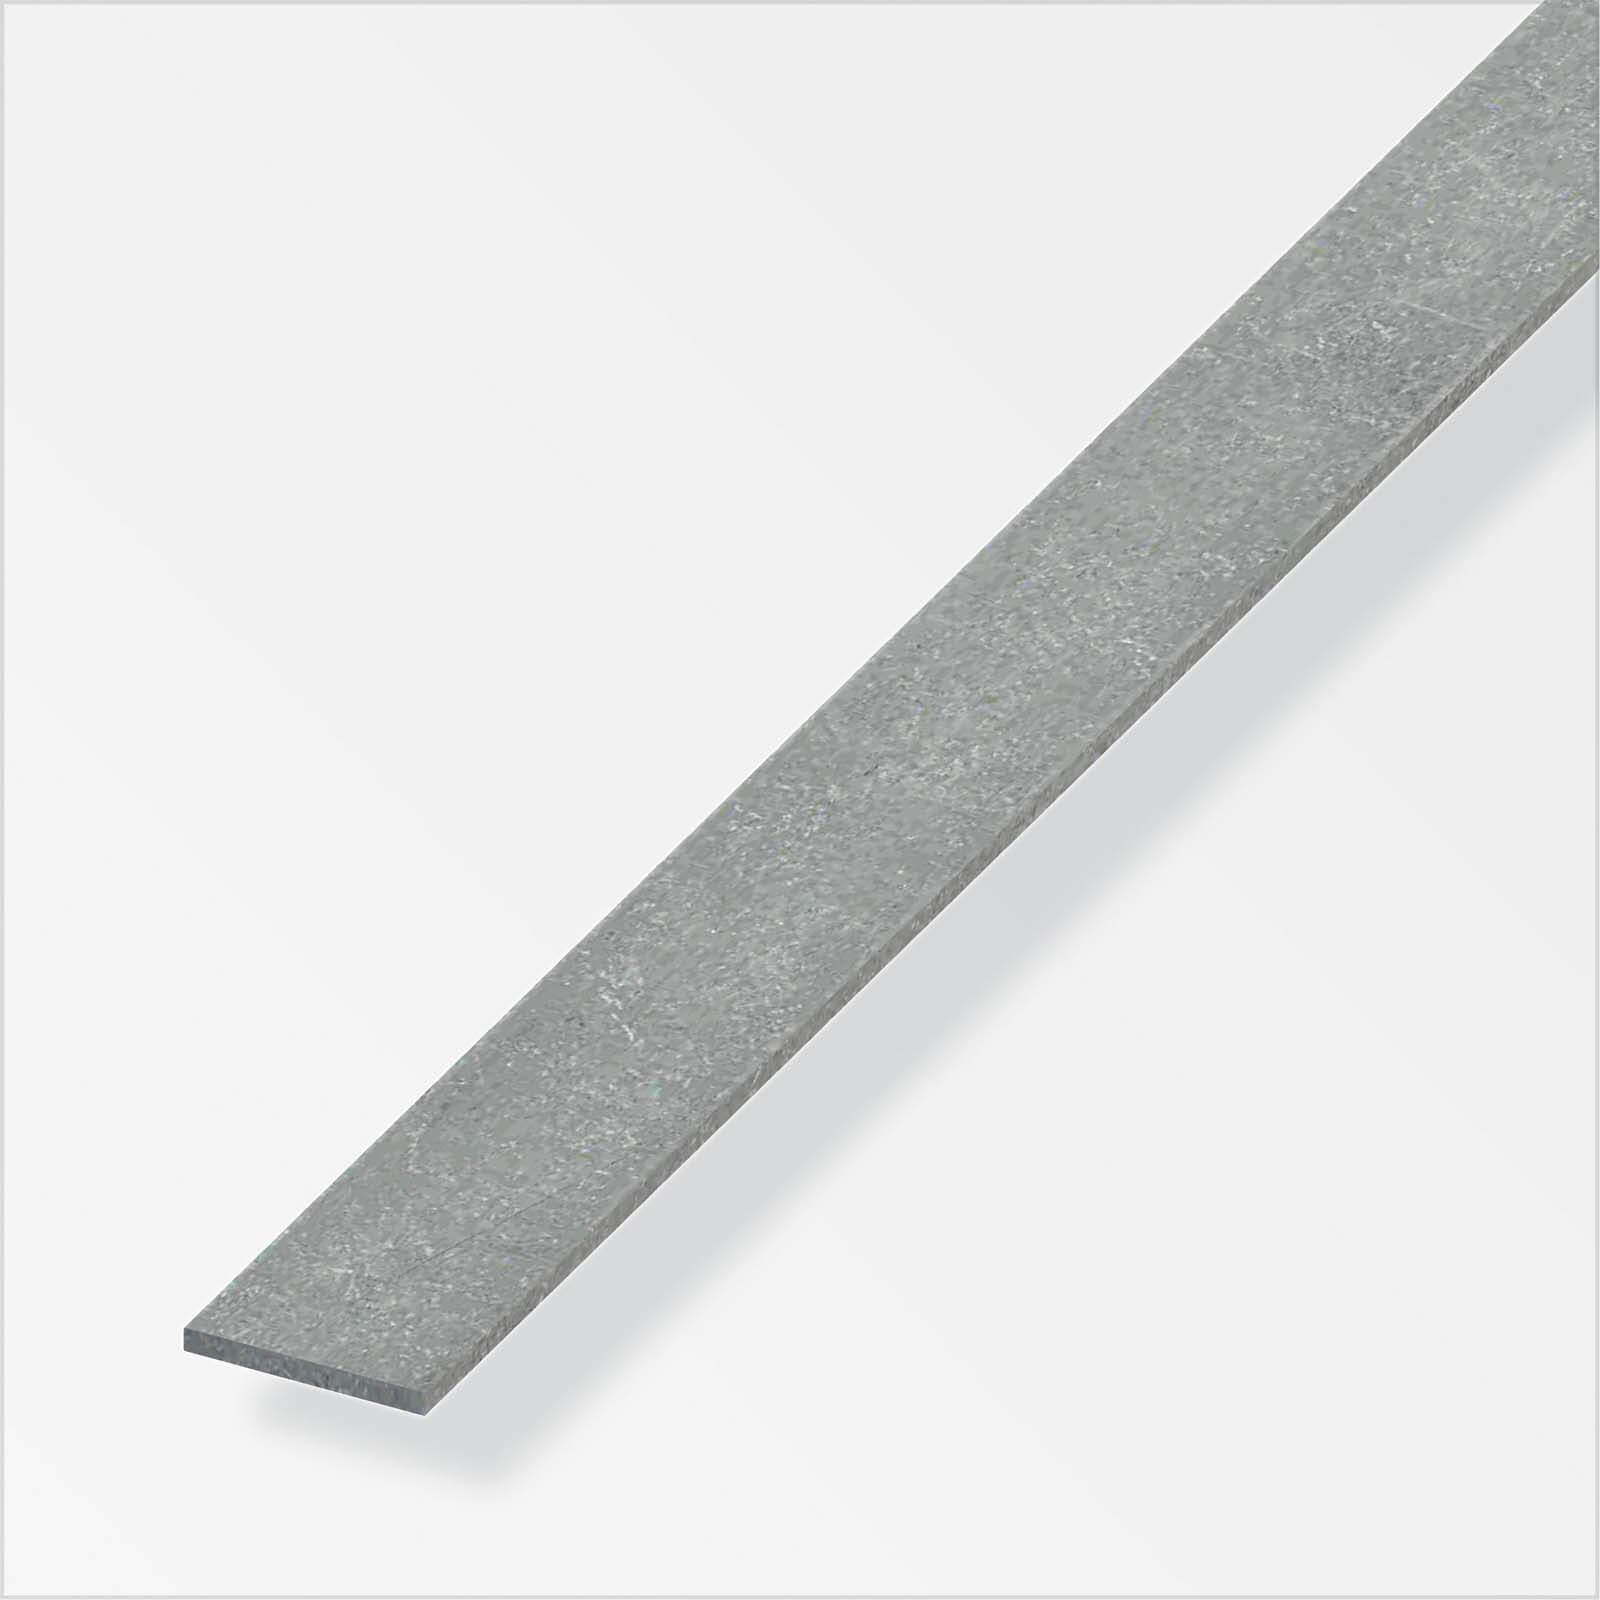 Photo of Drawn Steel Flat Bar Profile - 1m X 20mm